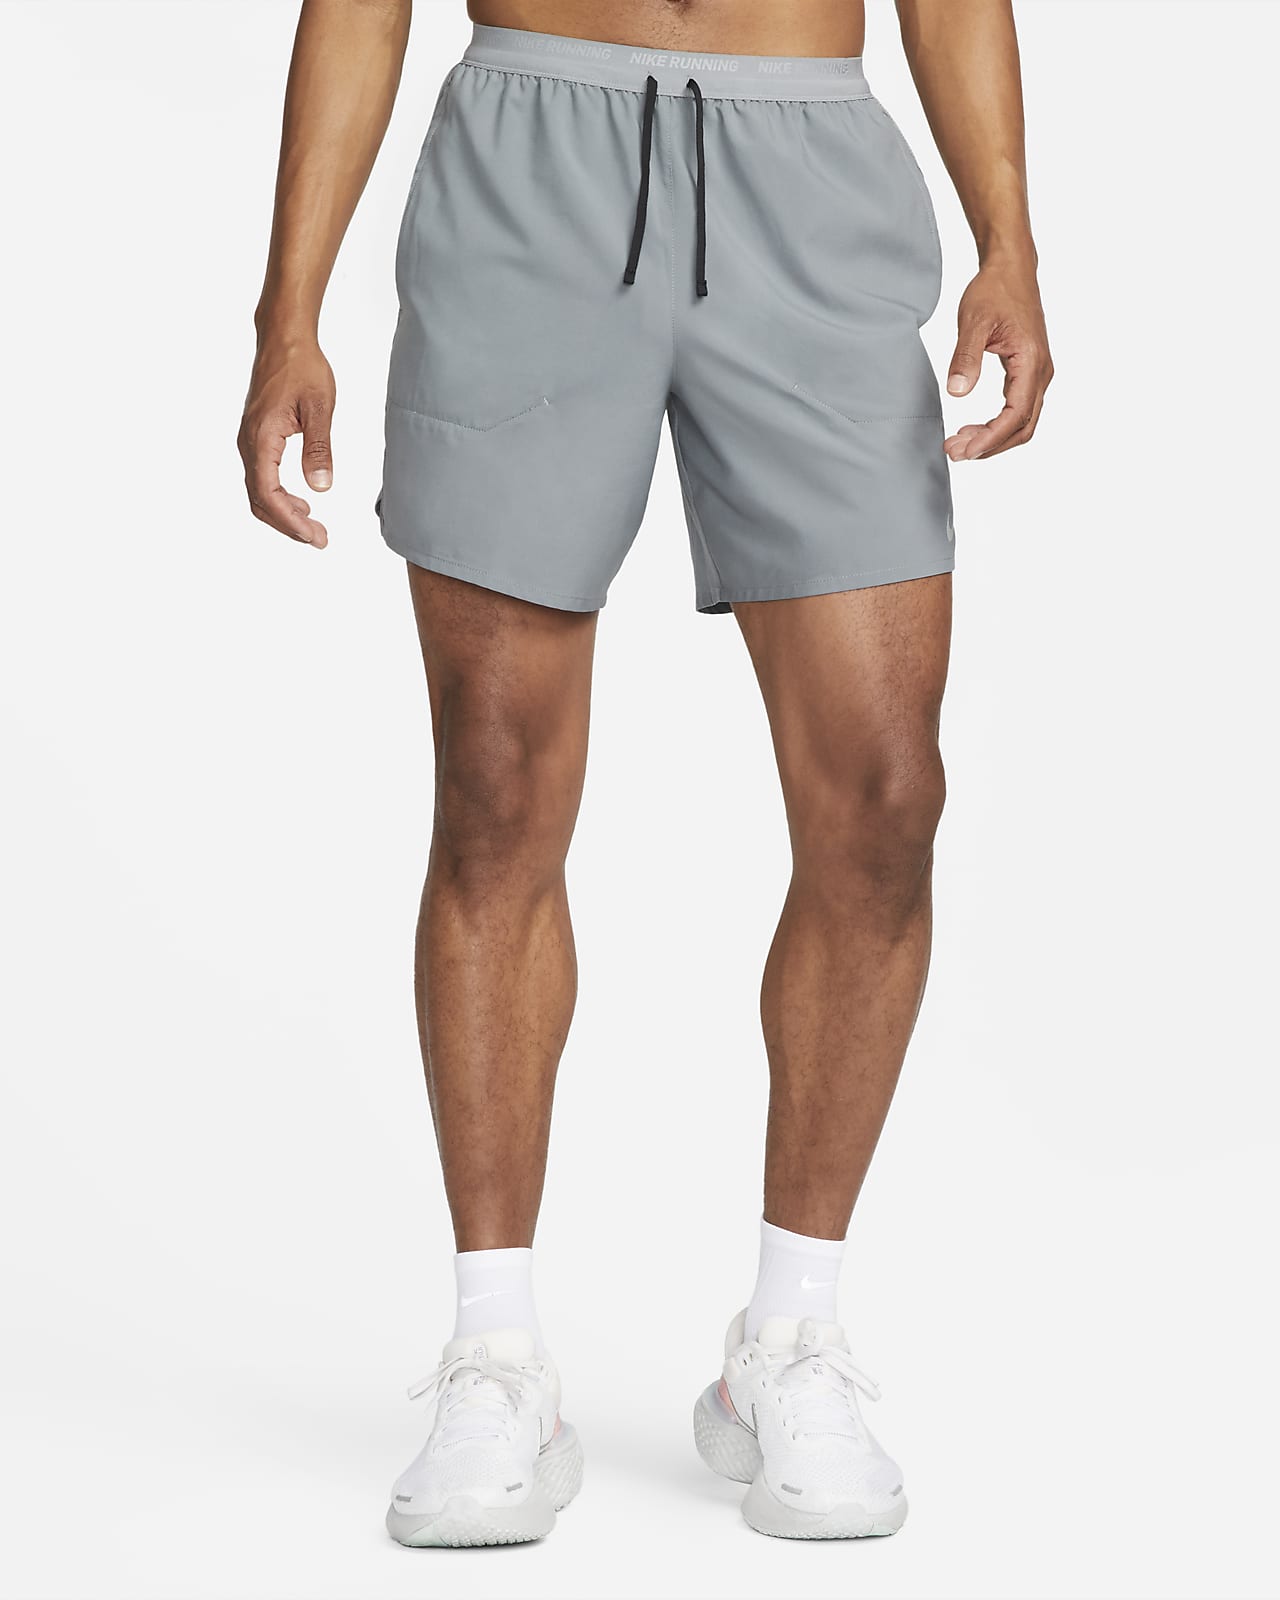 Shorts de running de 18 cm sin forro hombre Dri-FIT Nike .com